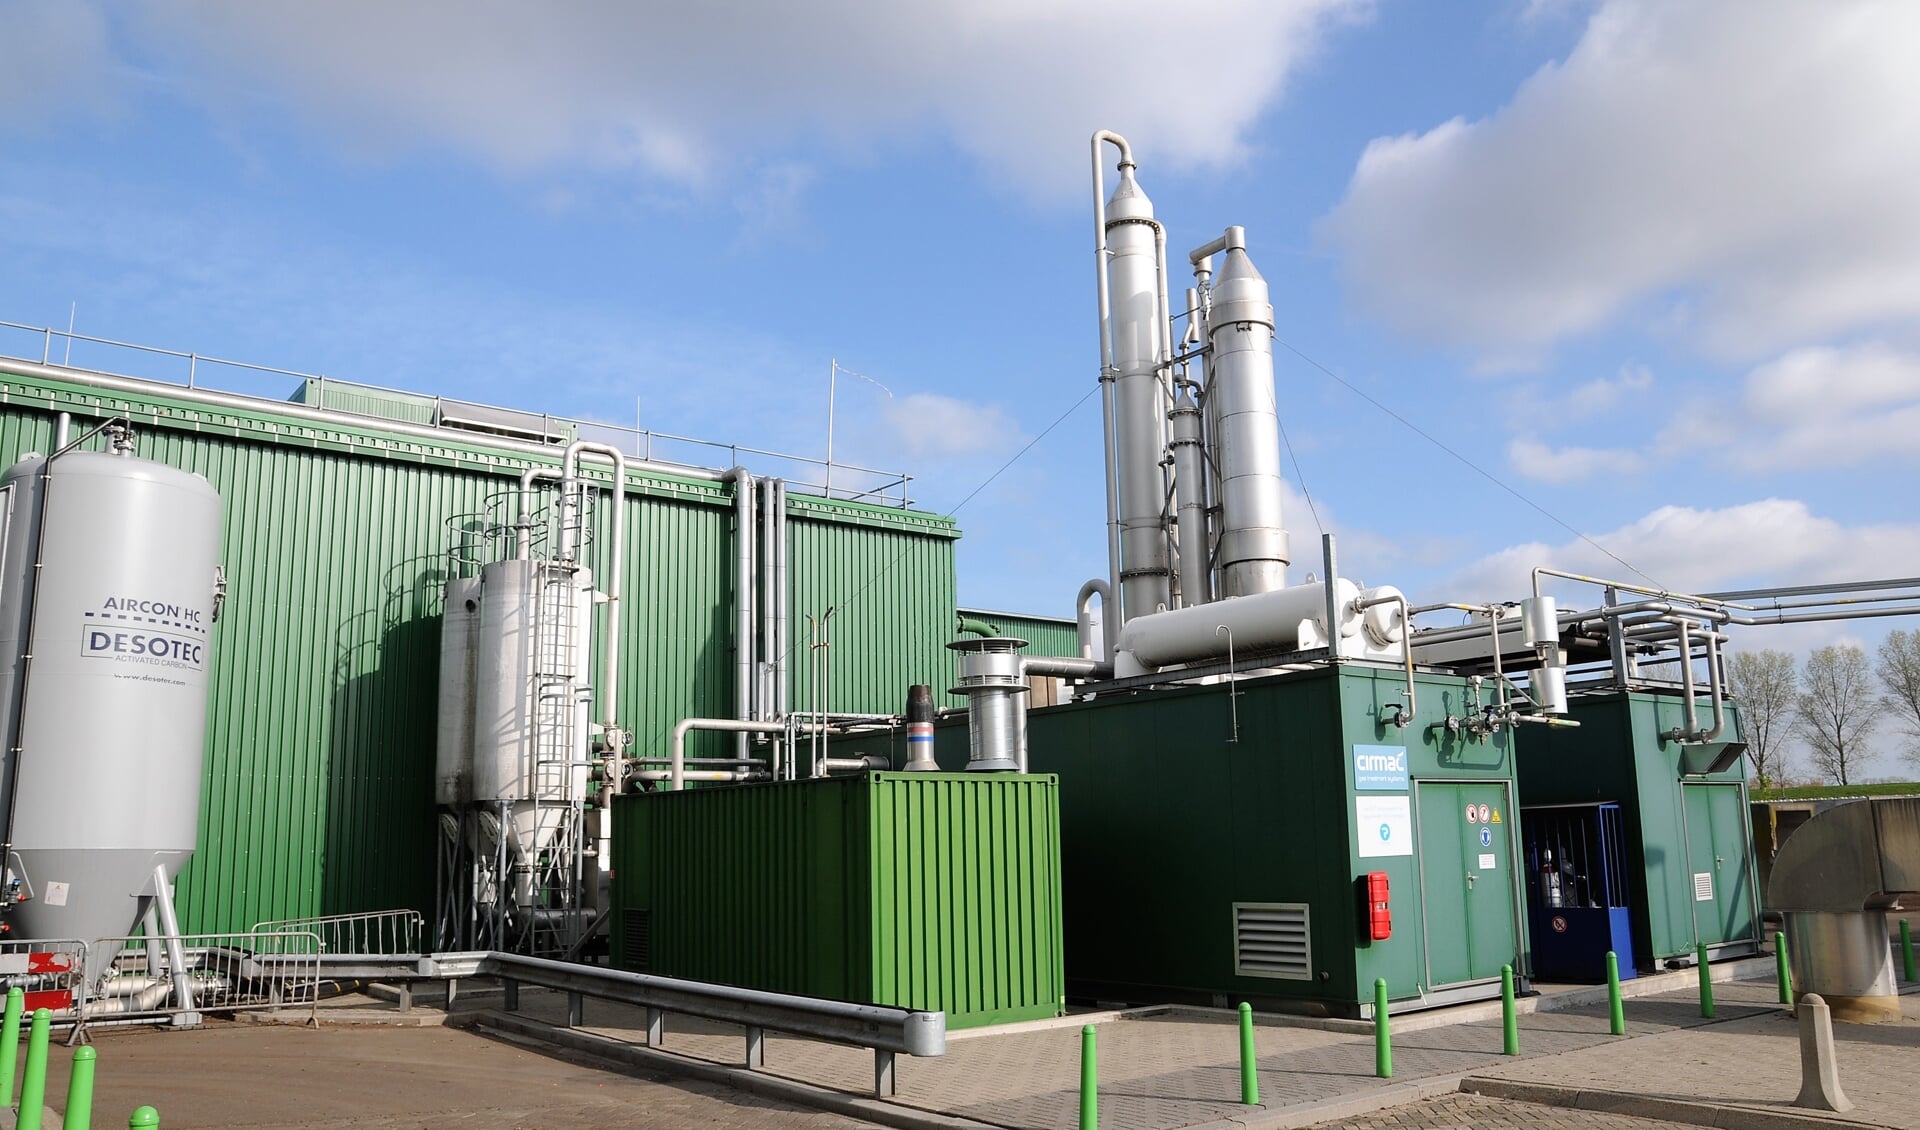 De 'groene energiefabriek' bij Meerlanden draagt bij aan de circulaire economie. Ook de biowarmte-installatie zou dit moeten doen, maar dat project is stilgelegd.